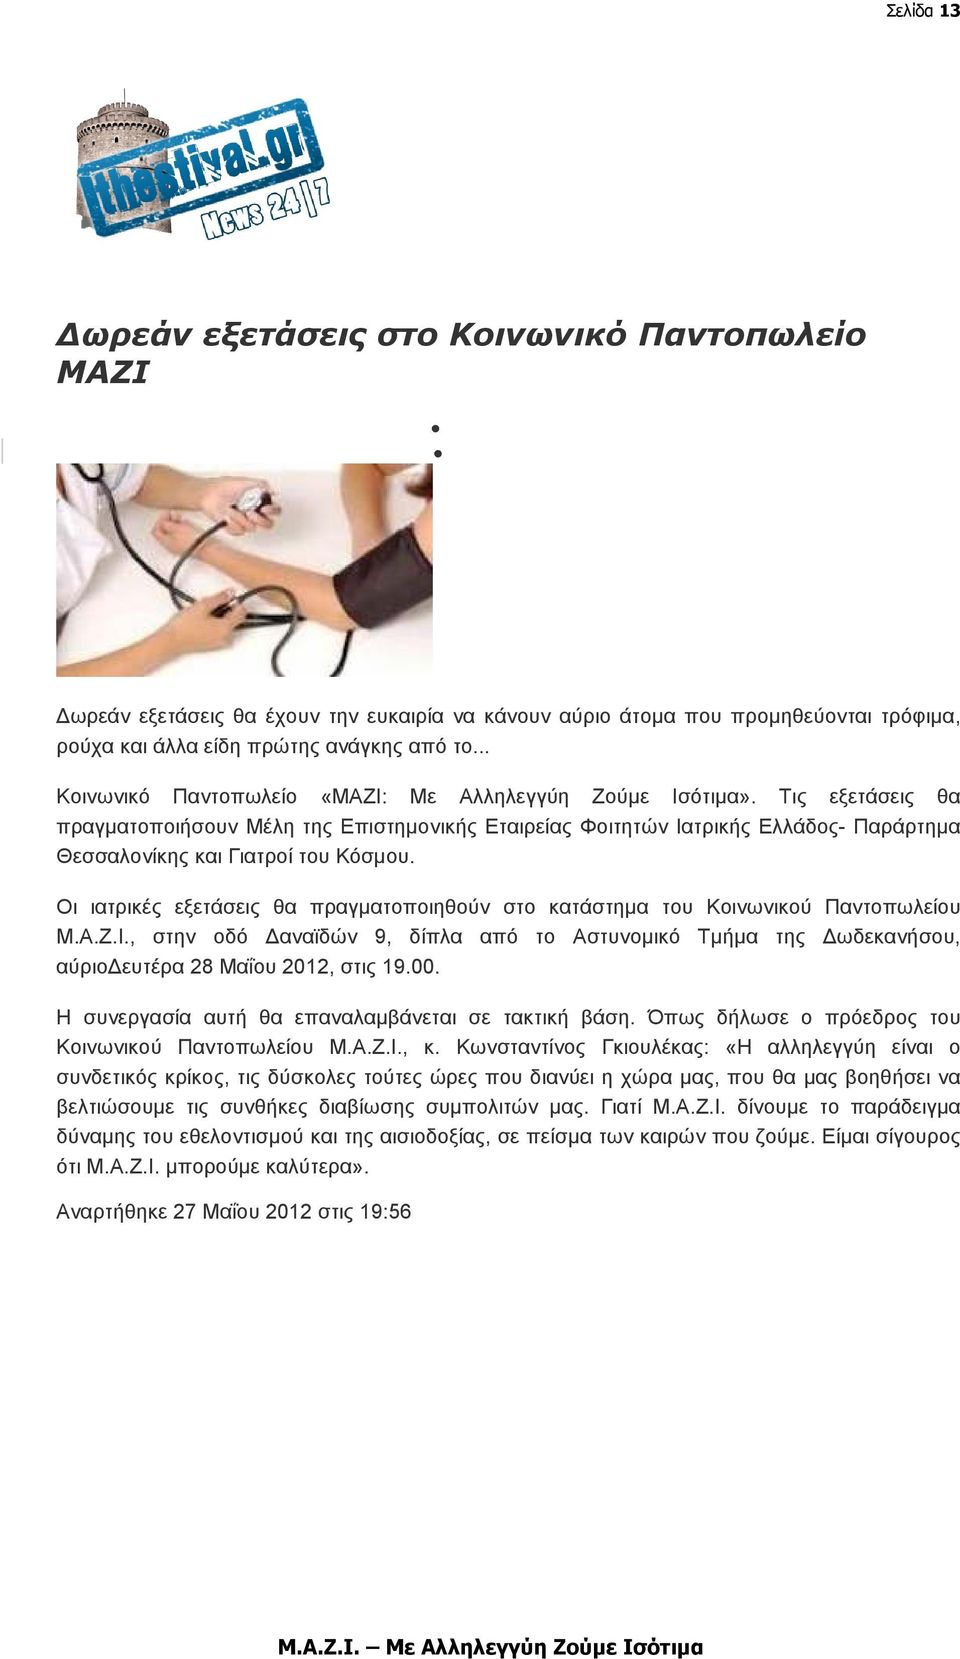 Τις εξετάσεις θα πραγµατοποιήσουν Μέλη της Επιστηµονικής Εταιρείας Φοιτητών Ιατρικής Ελλάδος- Παράρτηµα Θεσσαλονίκης και Γιατροί του Κόσµου.